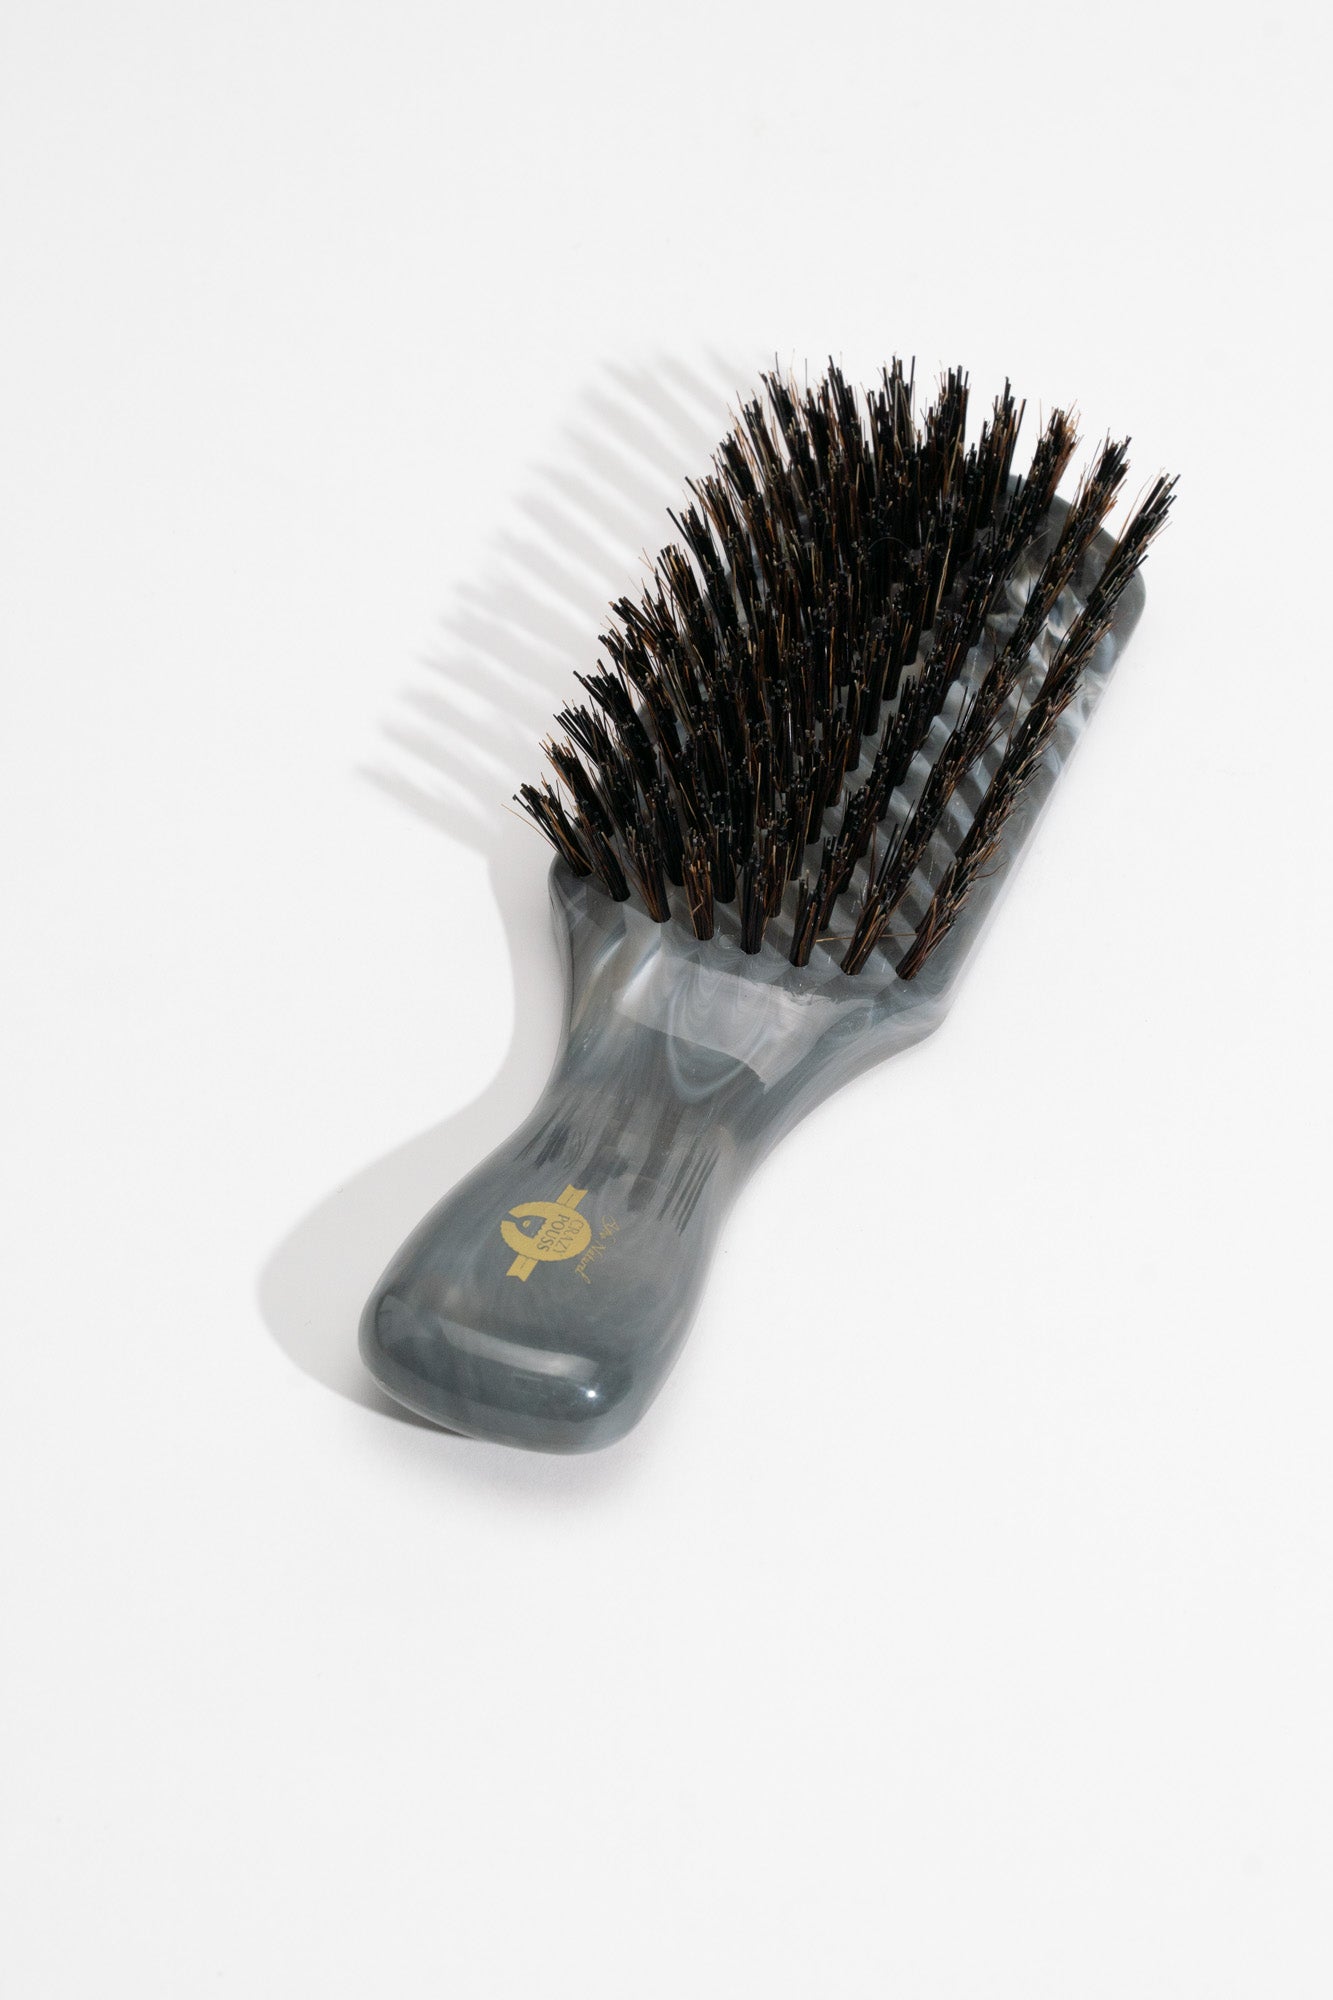 CRAZY POUSS - Brosse lissante en bois - 12 couleurs - Produit pour plaquer et lisser vos cheveux pendant les chignons